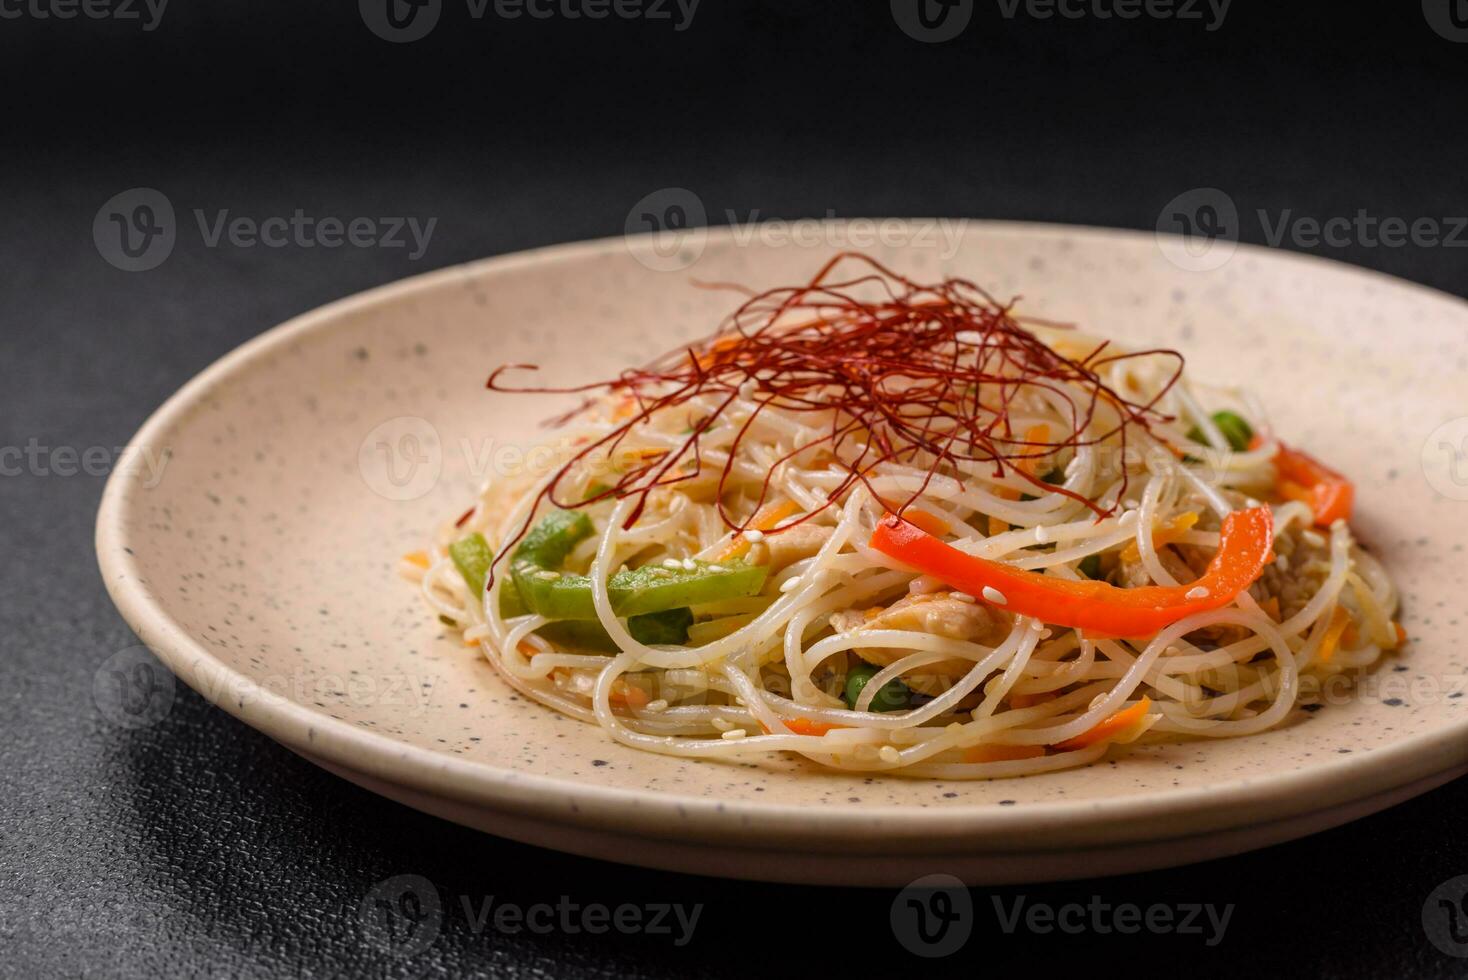 sabroso plato de asiático cocina con arroz fideos, pollo, espárragos, pimienta, sésamo semillas foto